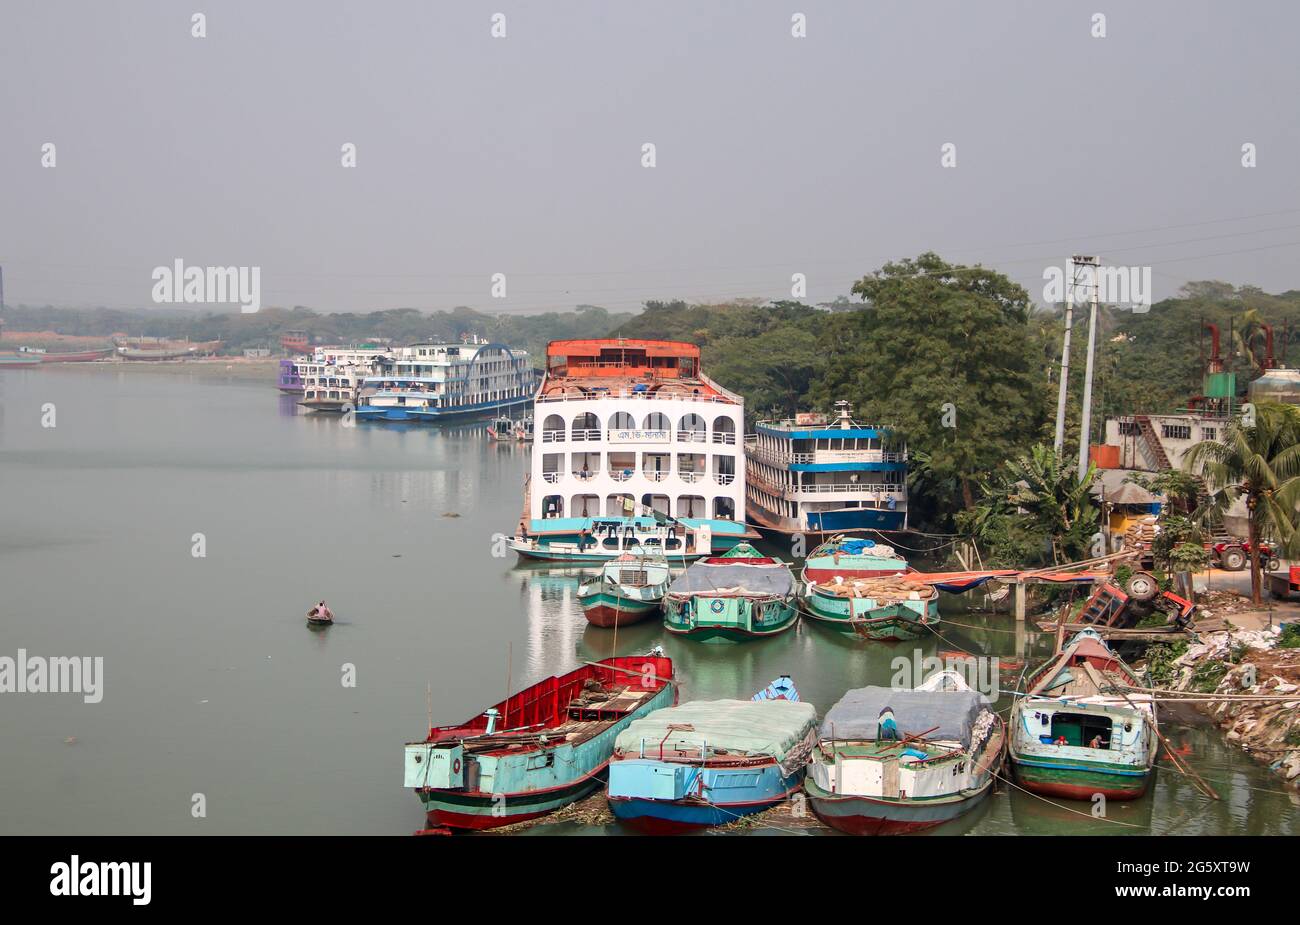 Bhola, Bangladesh : le canal de Bhola est situé à côté de la ville de Bhola. Le canal est très important pour la communication navale et le transport Banque D'Images